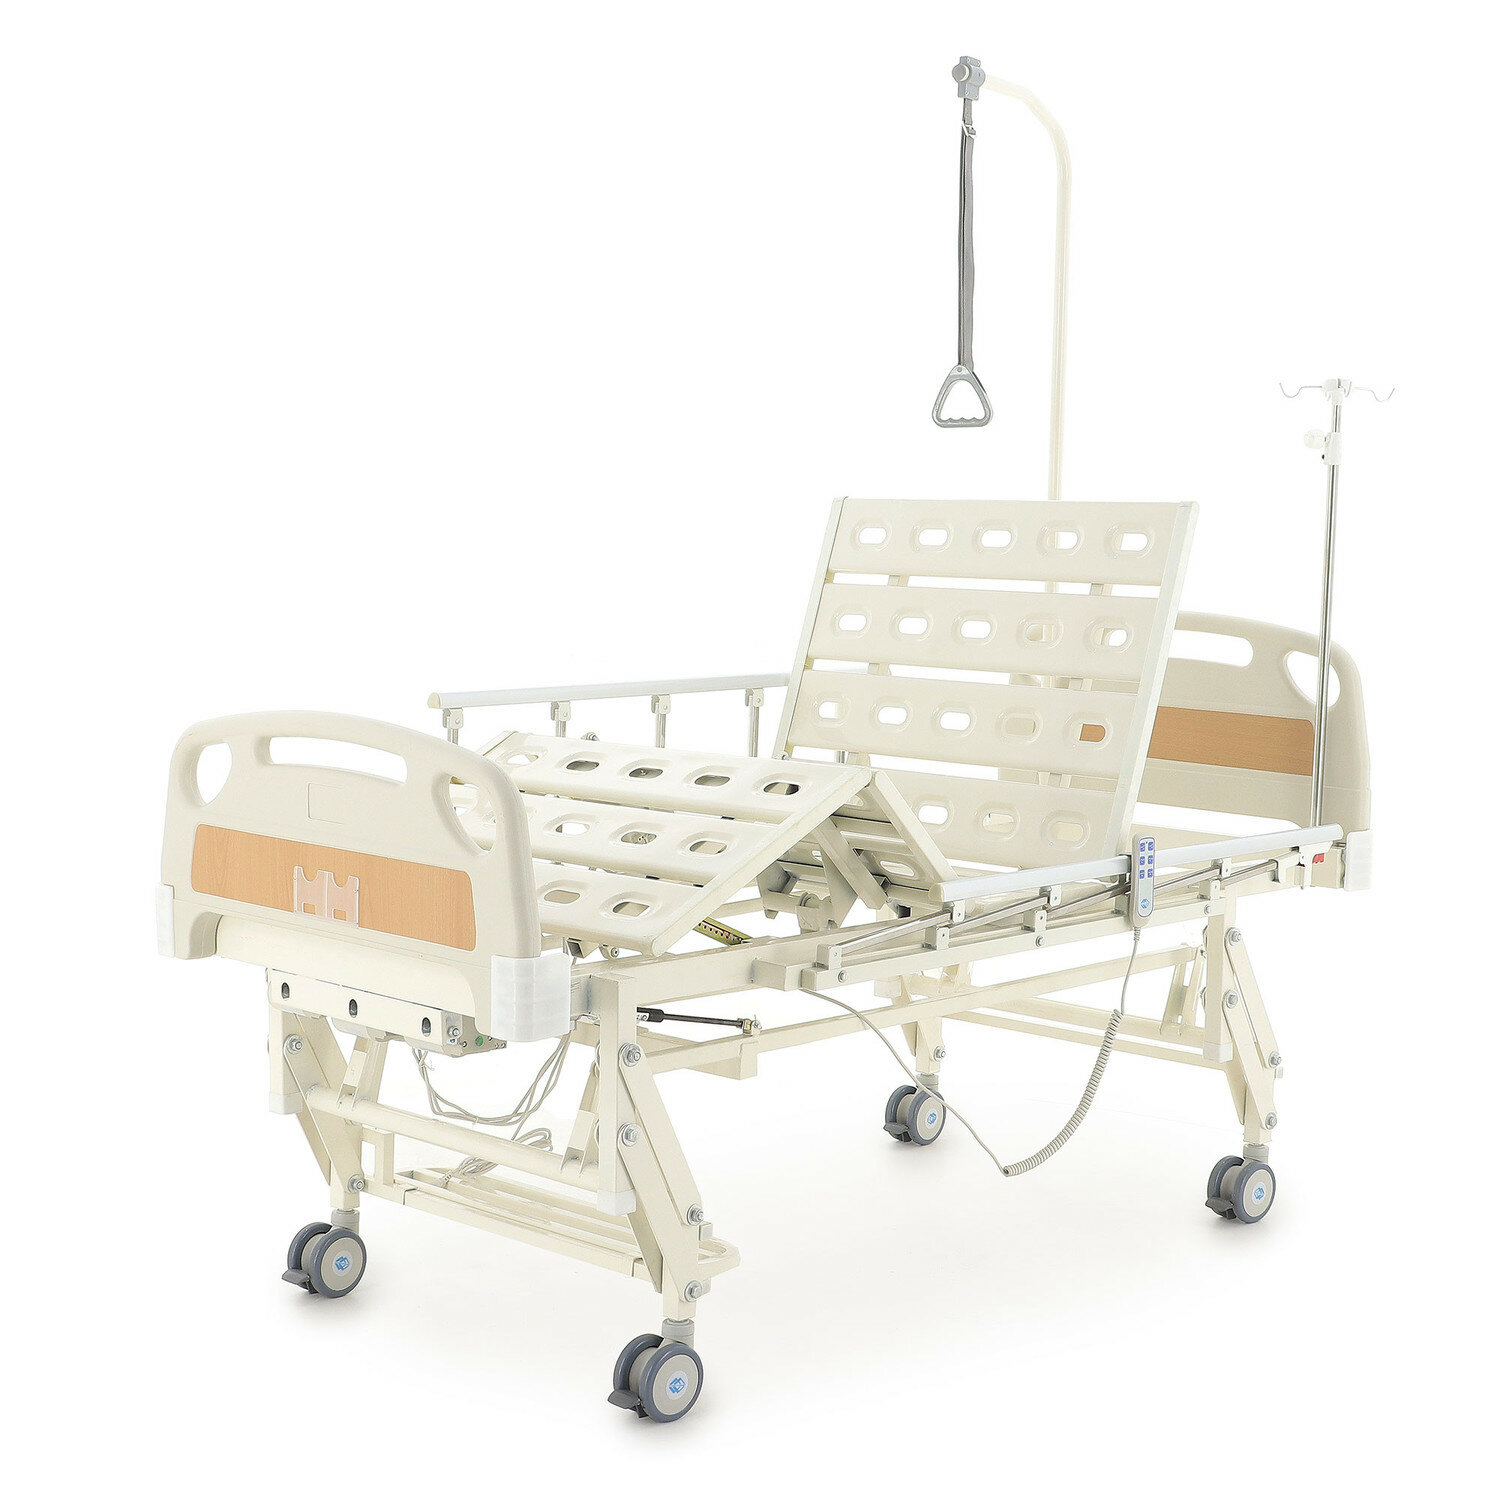 Кровать электрическая функциональная с регулировкой высоты DB-6 (MosMed -DB-6) белая для лежащих больных с поднятием секции спины, поднятием ног и регулировки по высоте